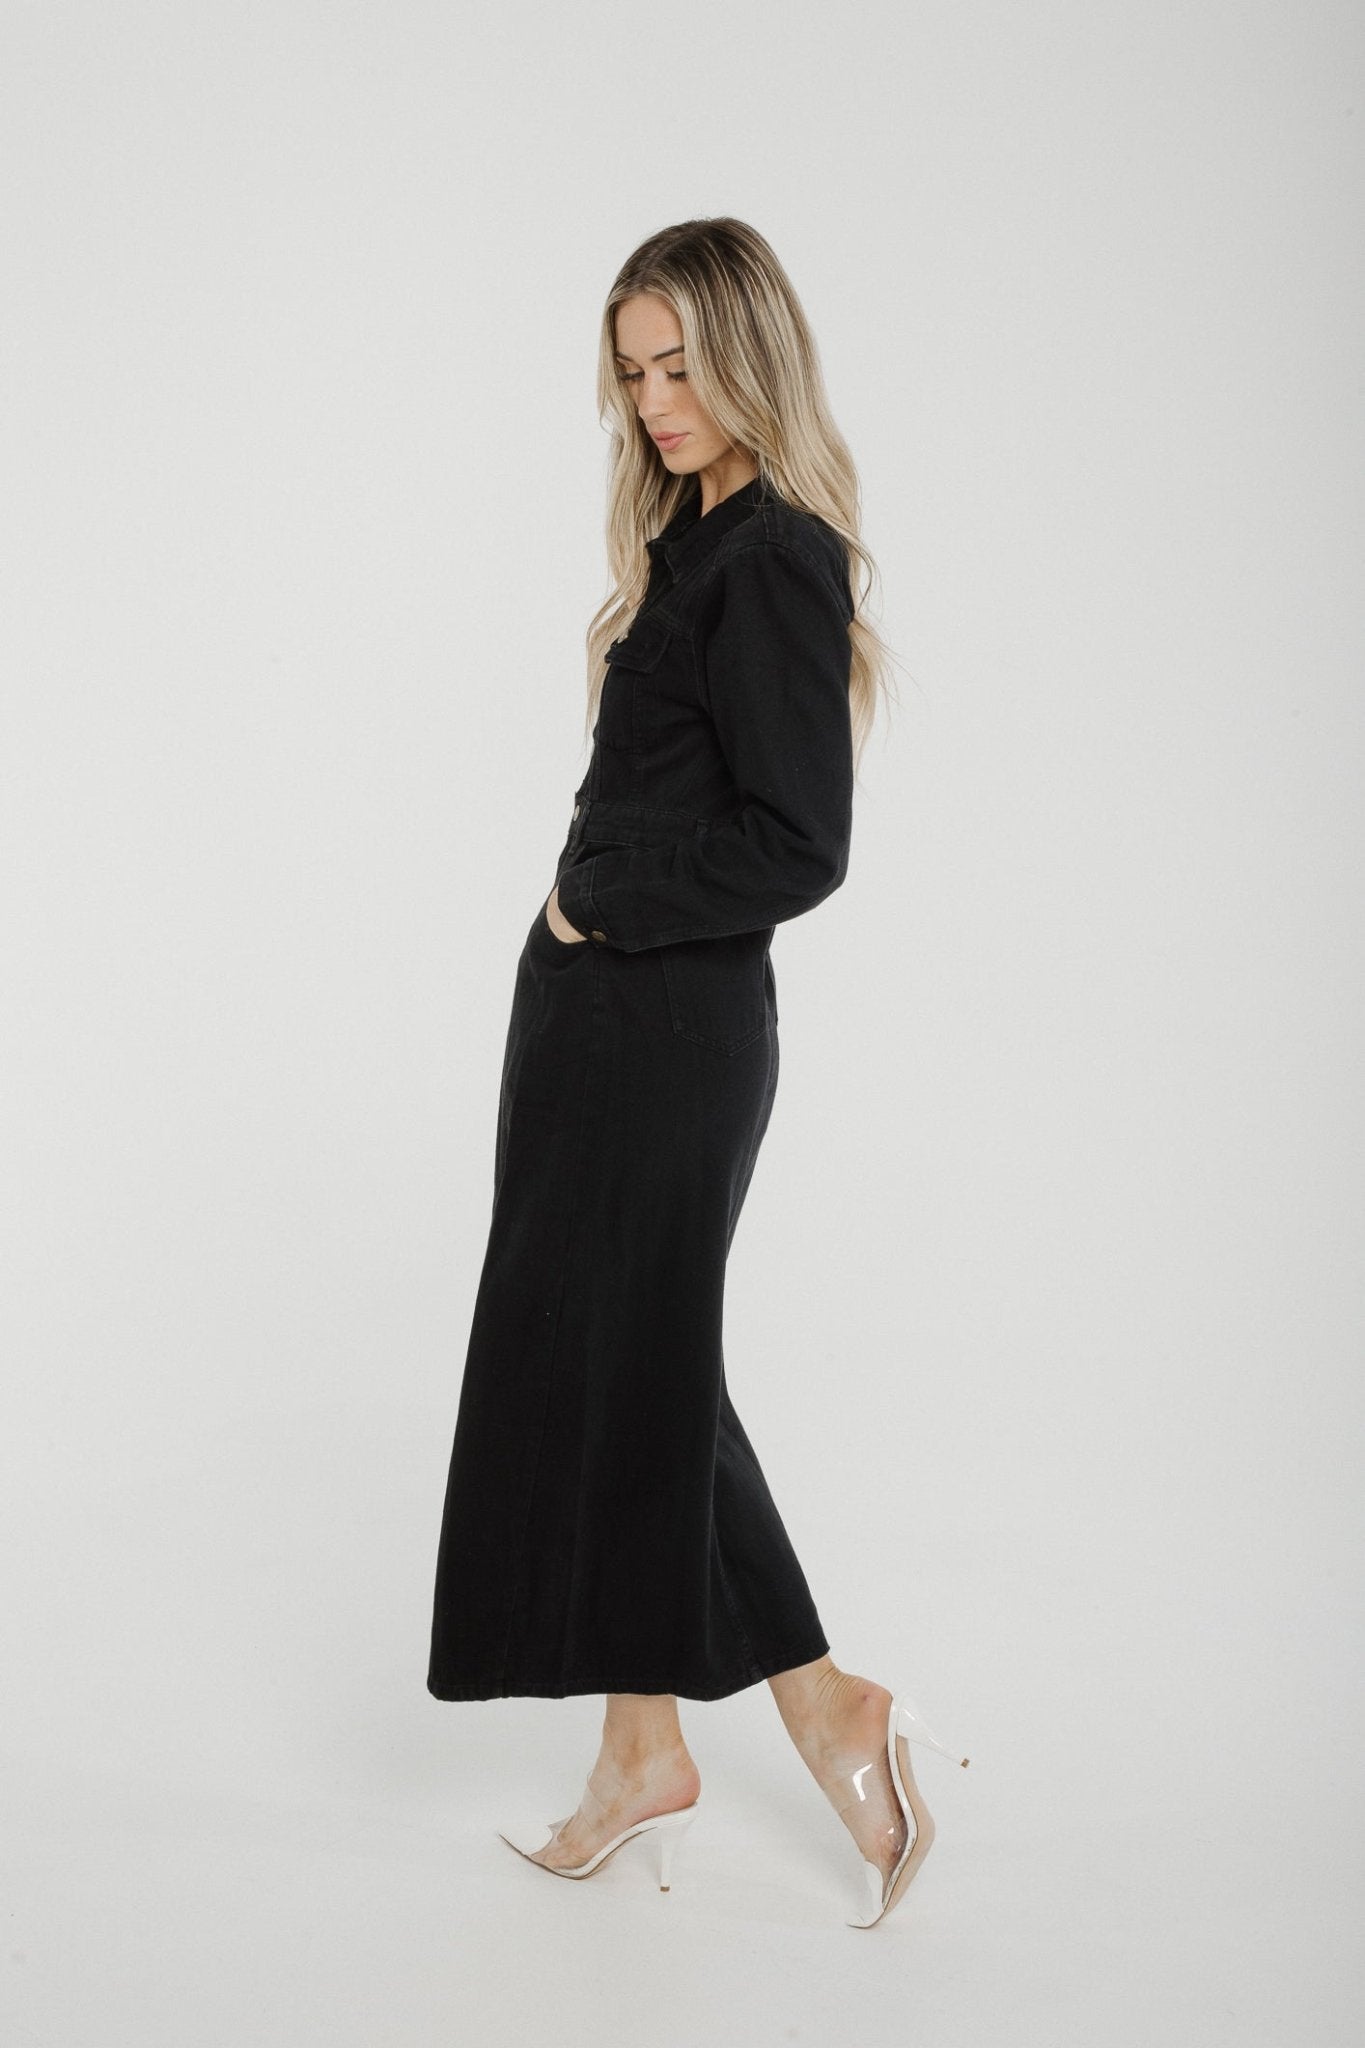 Polly Denim Midi Dress In Black - The Walk in Wardrobe